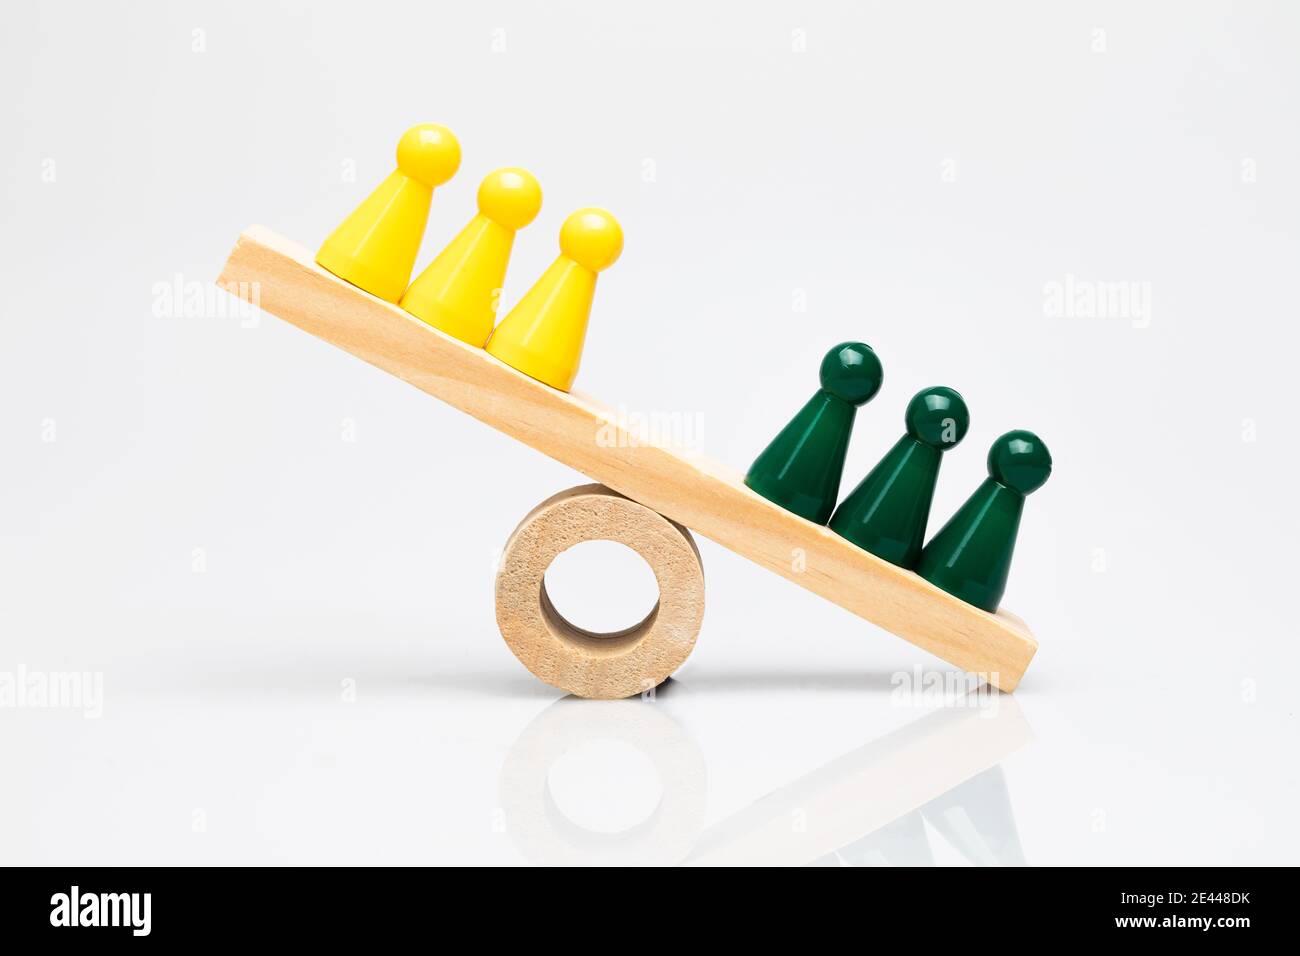 Grüne und gelbe Spielsteine auf einer hölzernen Wippe. Konzeptionelle Aufnahmen rund um Vergleich, Wettbewerb von Teams, gewinnende Gruppen und Differenzierung. Stockfoto